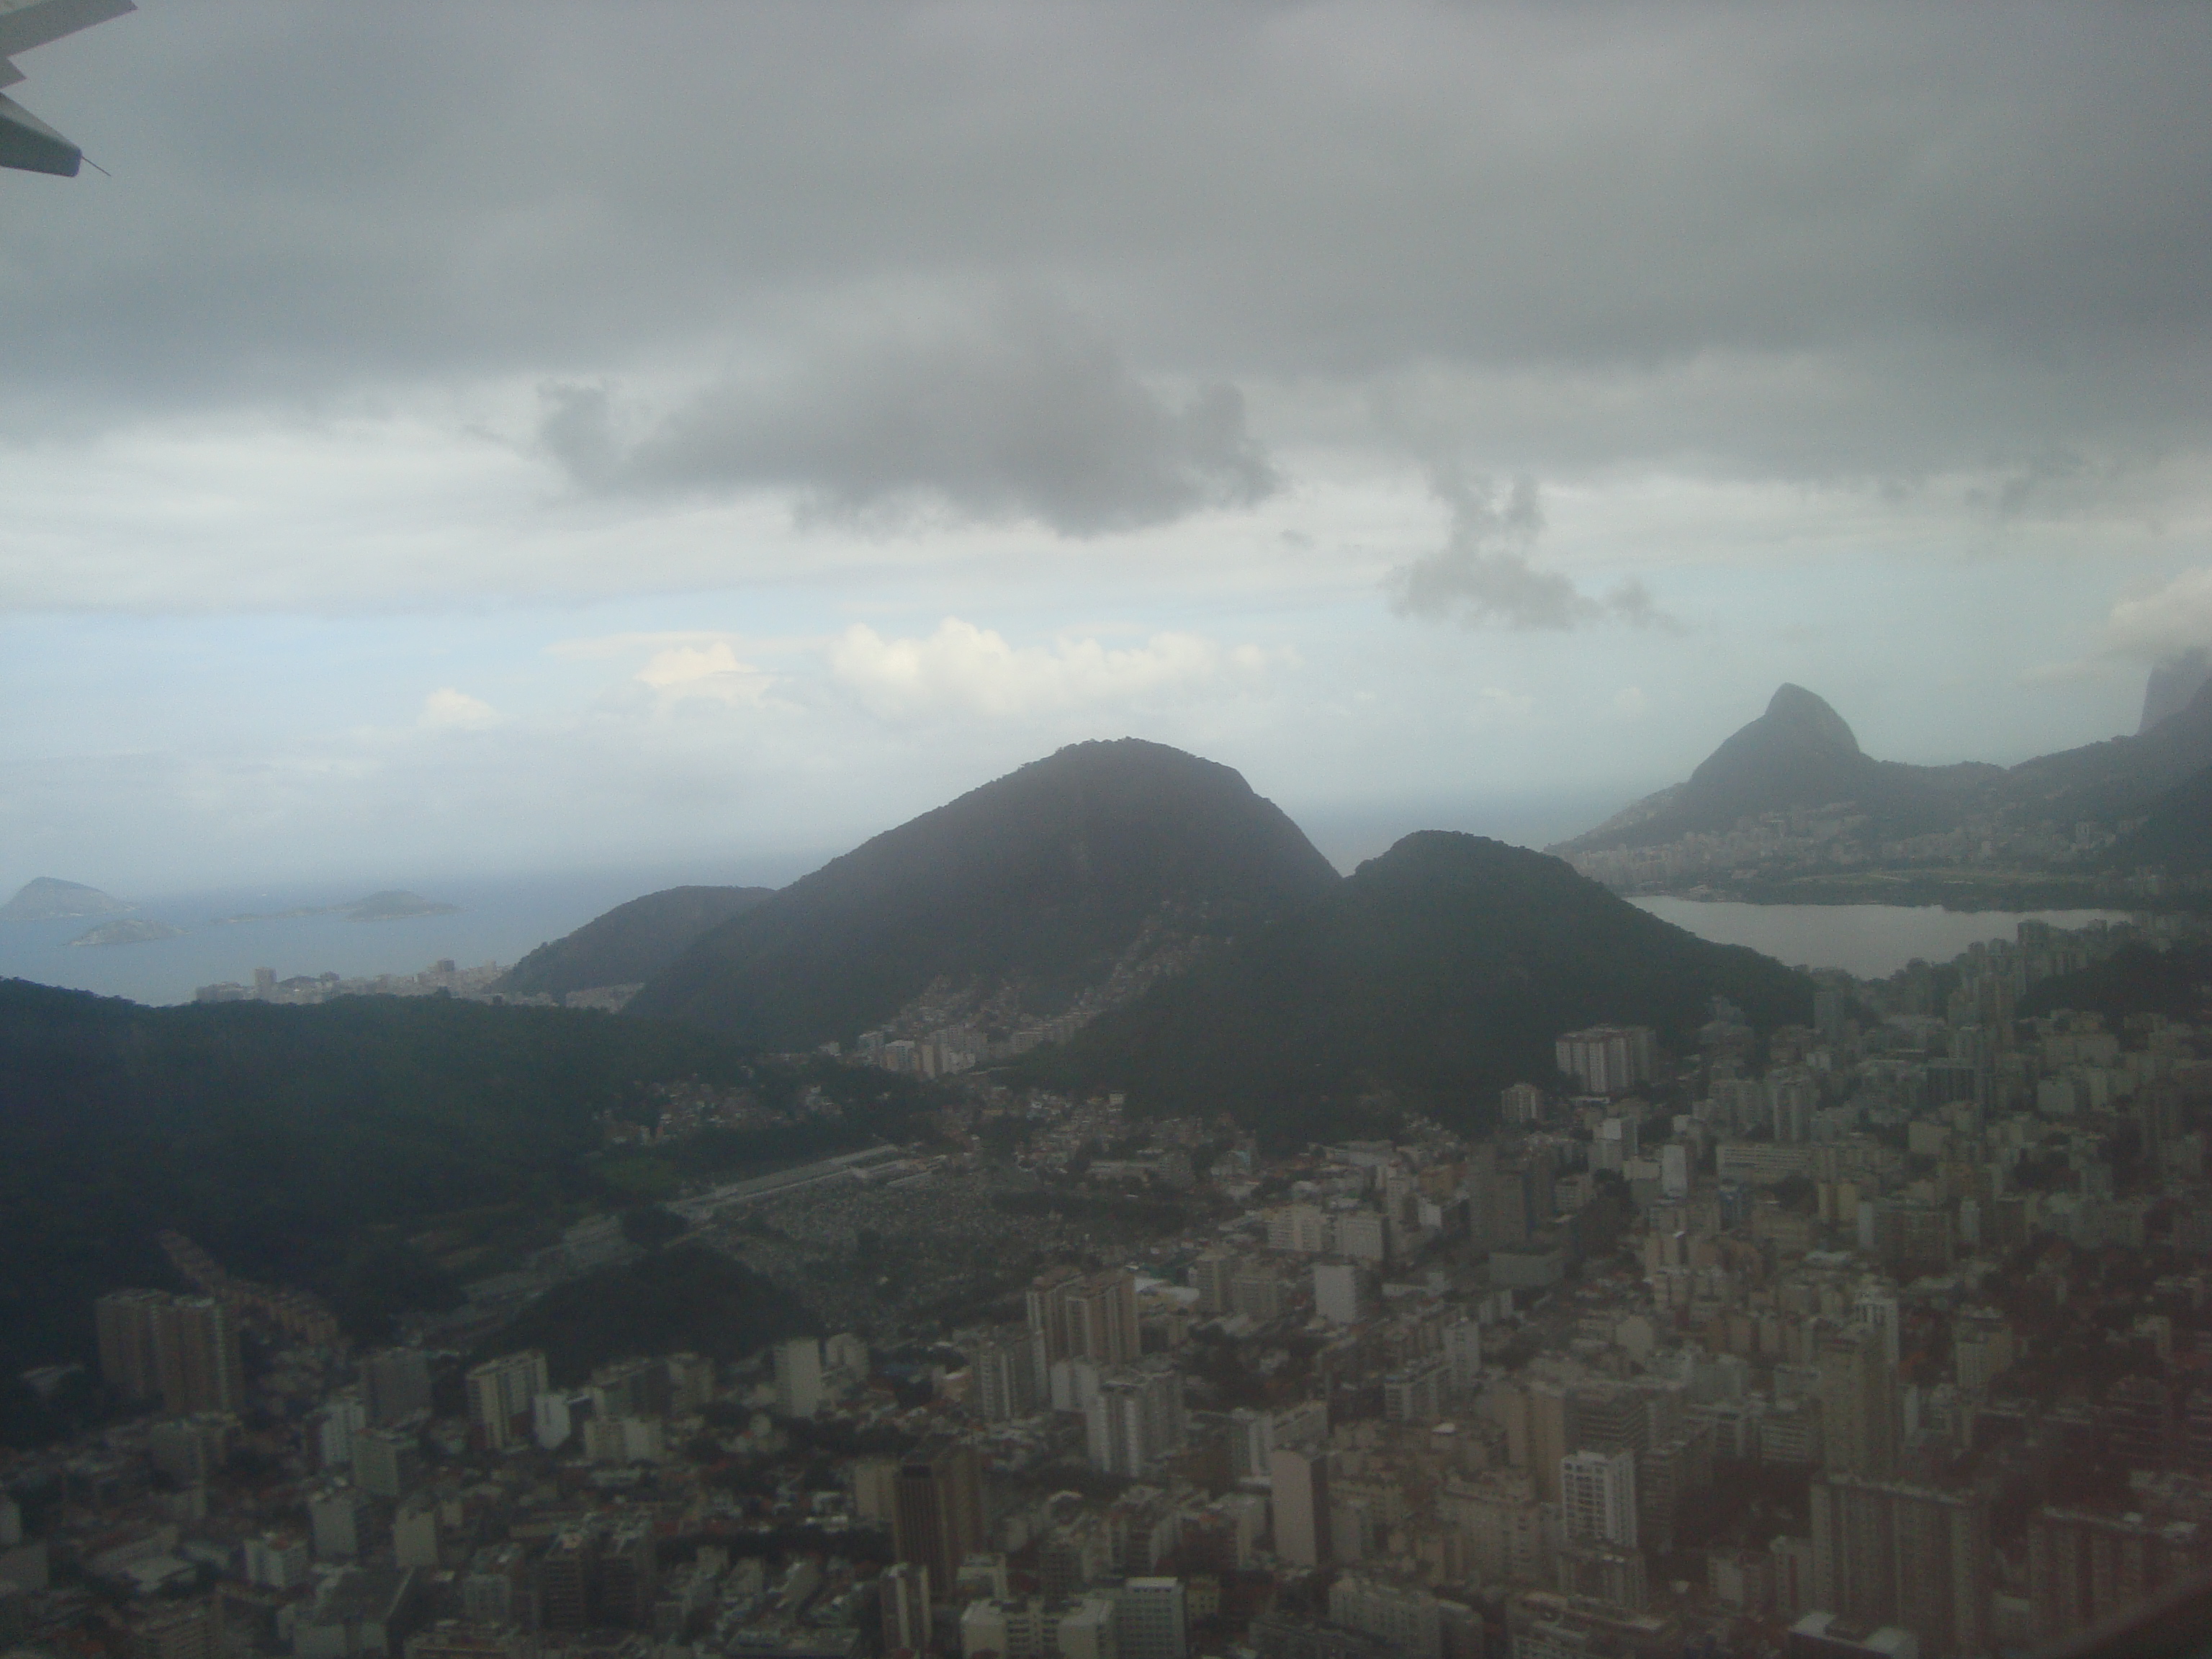 Sobrevoando a cidade do Rio de Janeiro. (07/05/2009)